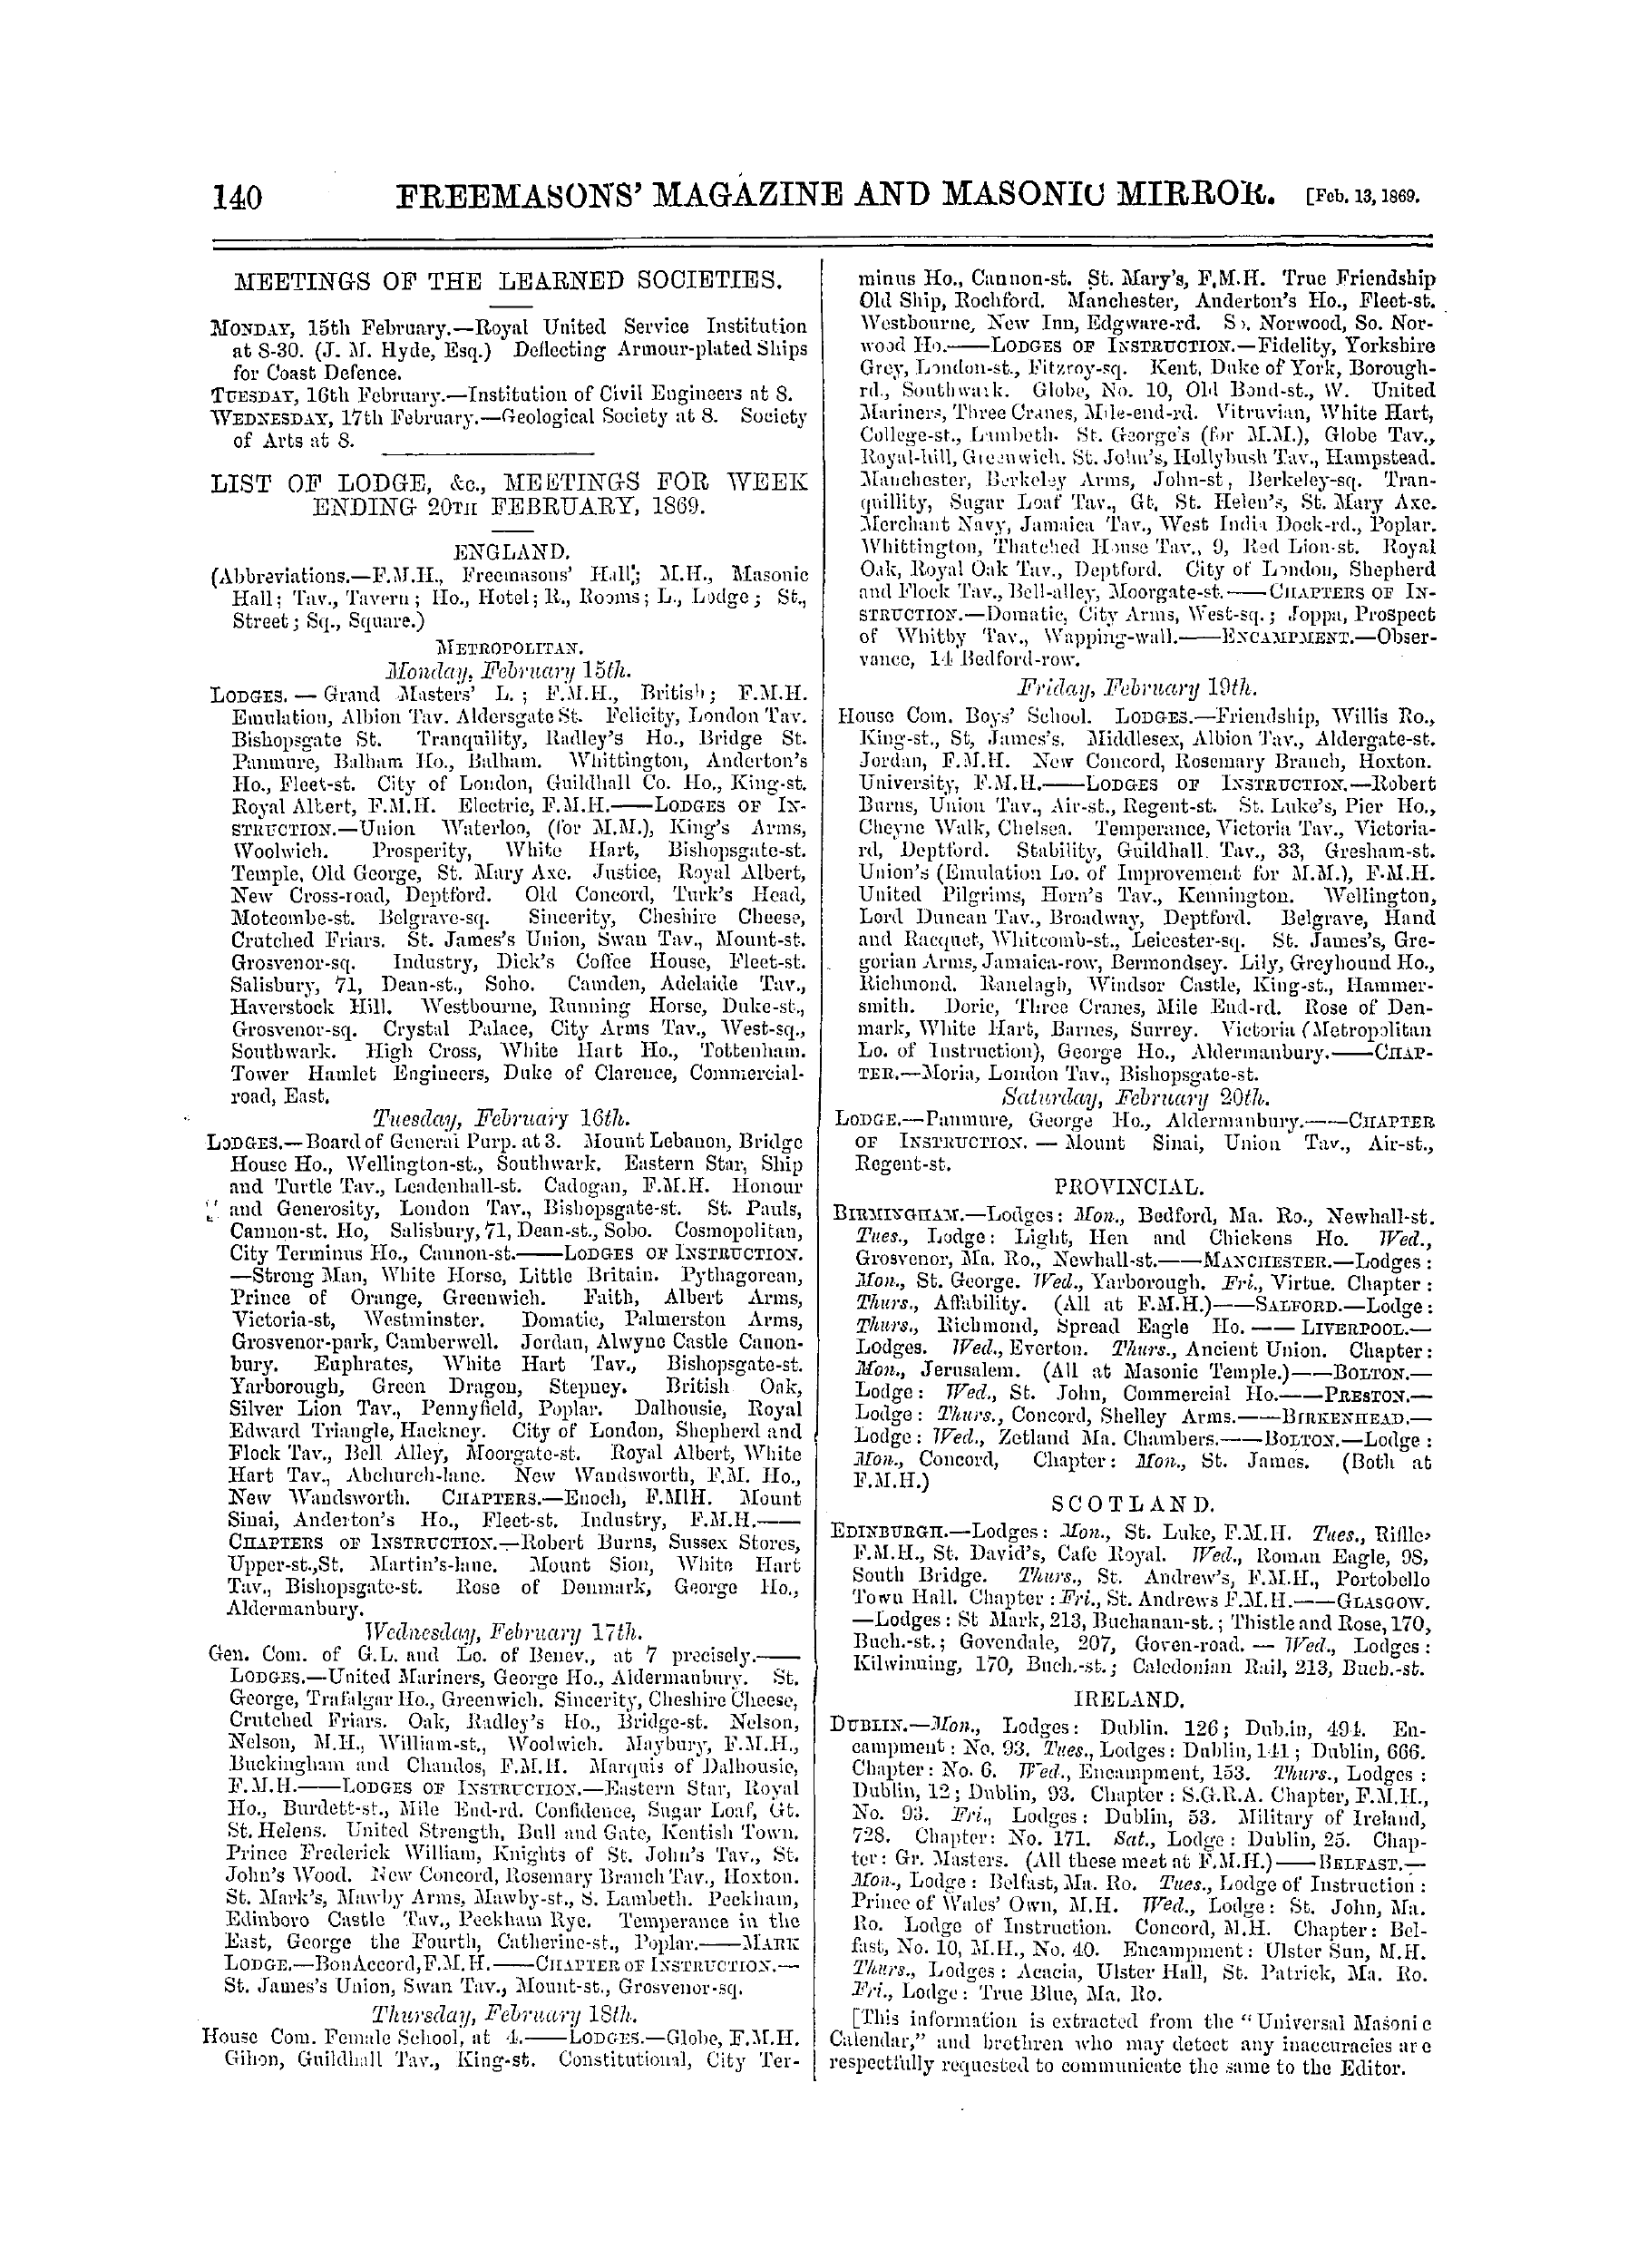 The Freemasons' Monthly Magazine: 1869-02-13: 20